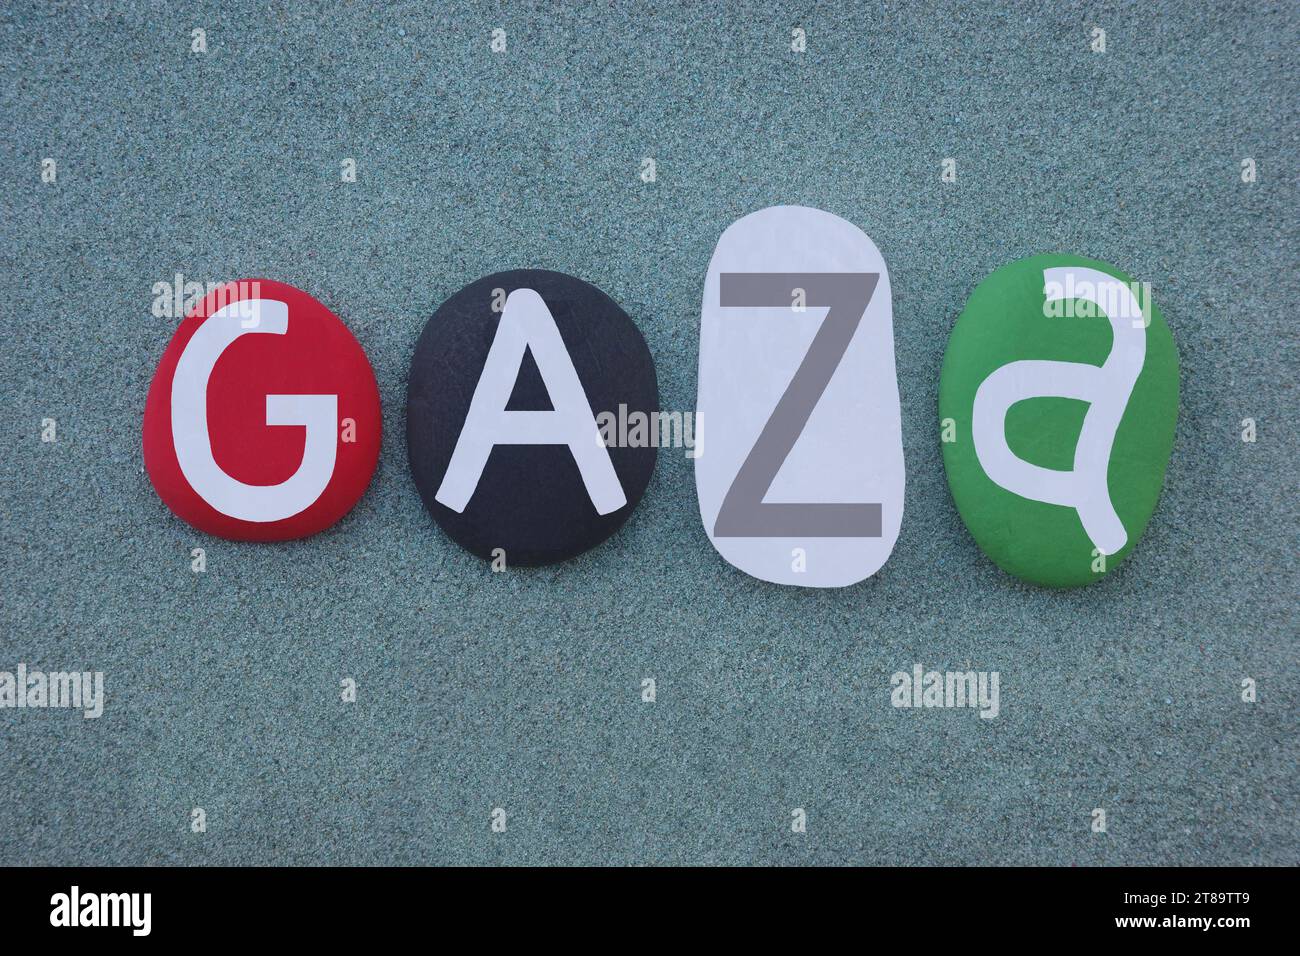 Gaza o Gaza City, città palestinese nella Striscia di Gaza e la città più grande dello Stato di Palestina, testo creativo composto con i colori della bandiera nazionale Foto Stock